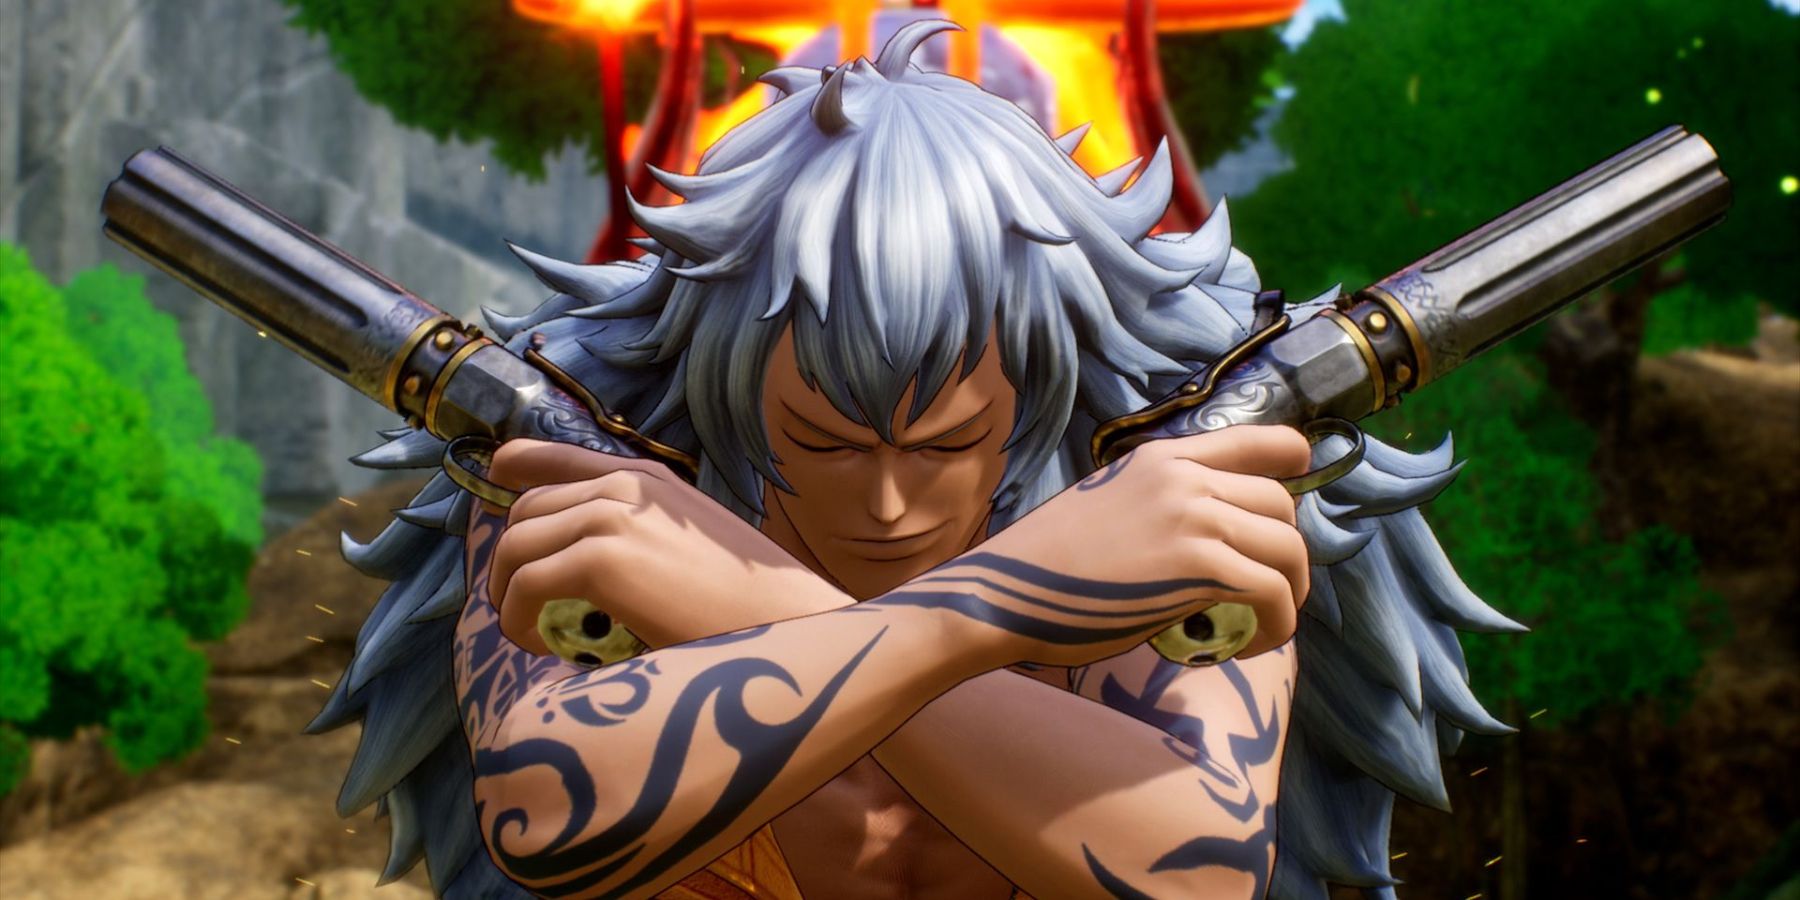 O novo personagem de One Piece, Adio, é visto segurando duas pistolas no peito com um inimigo explodindo atrás deles, visto acima de seu cabelo prateado.